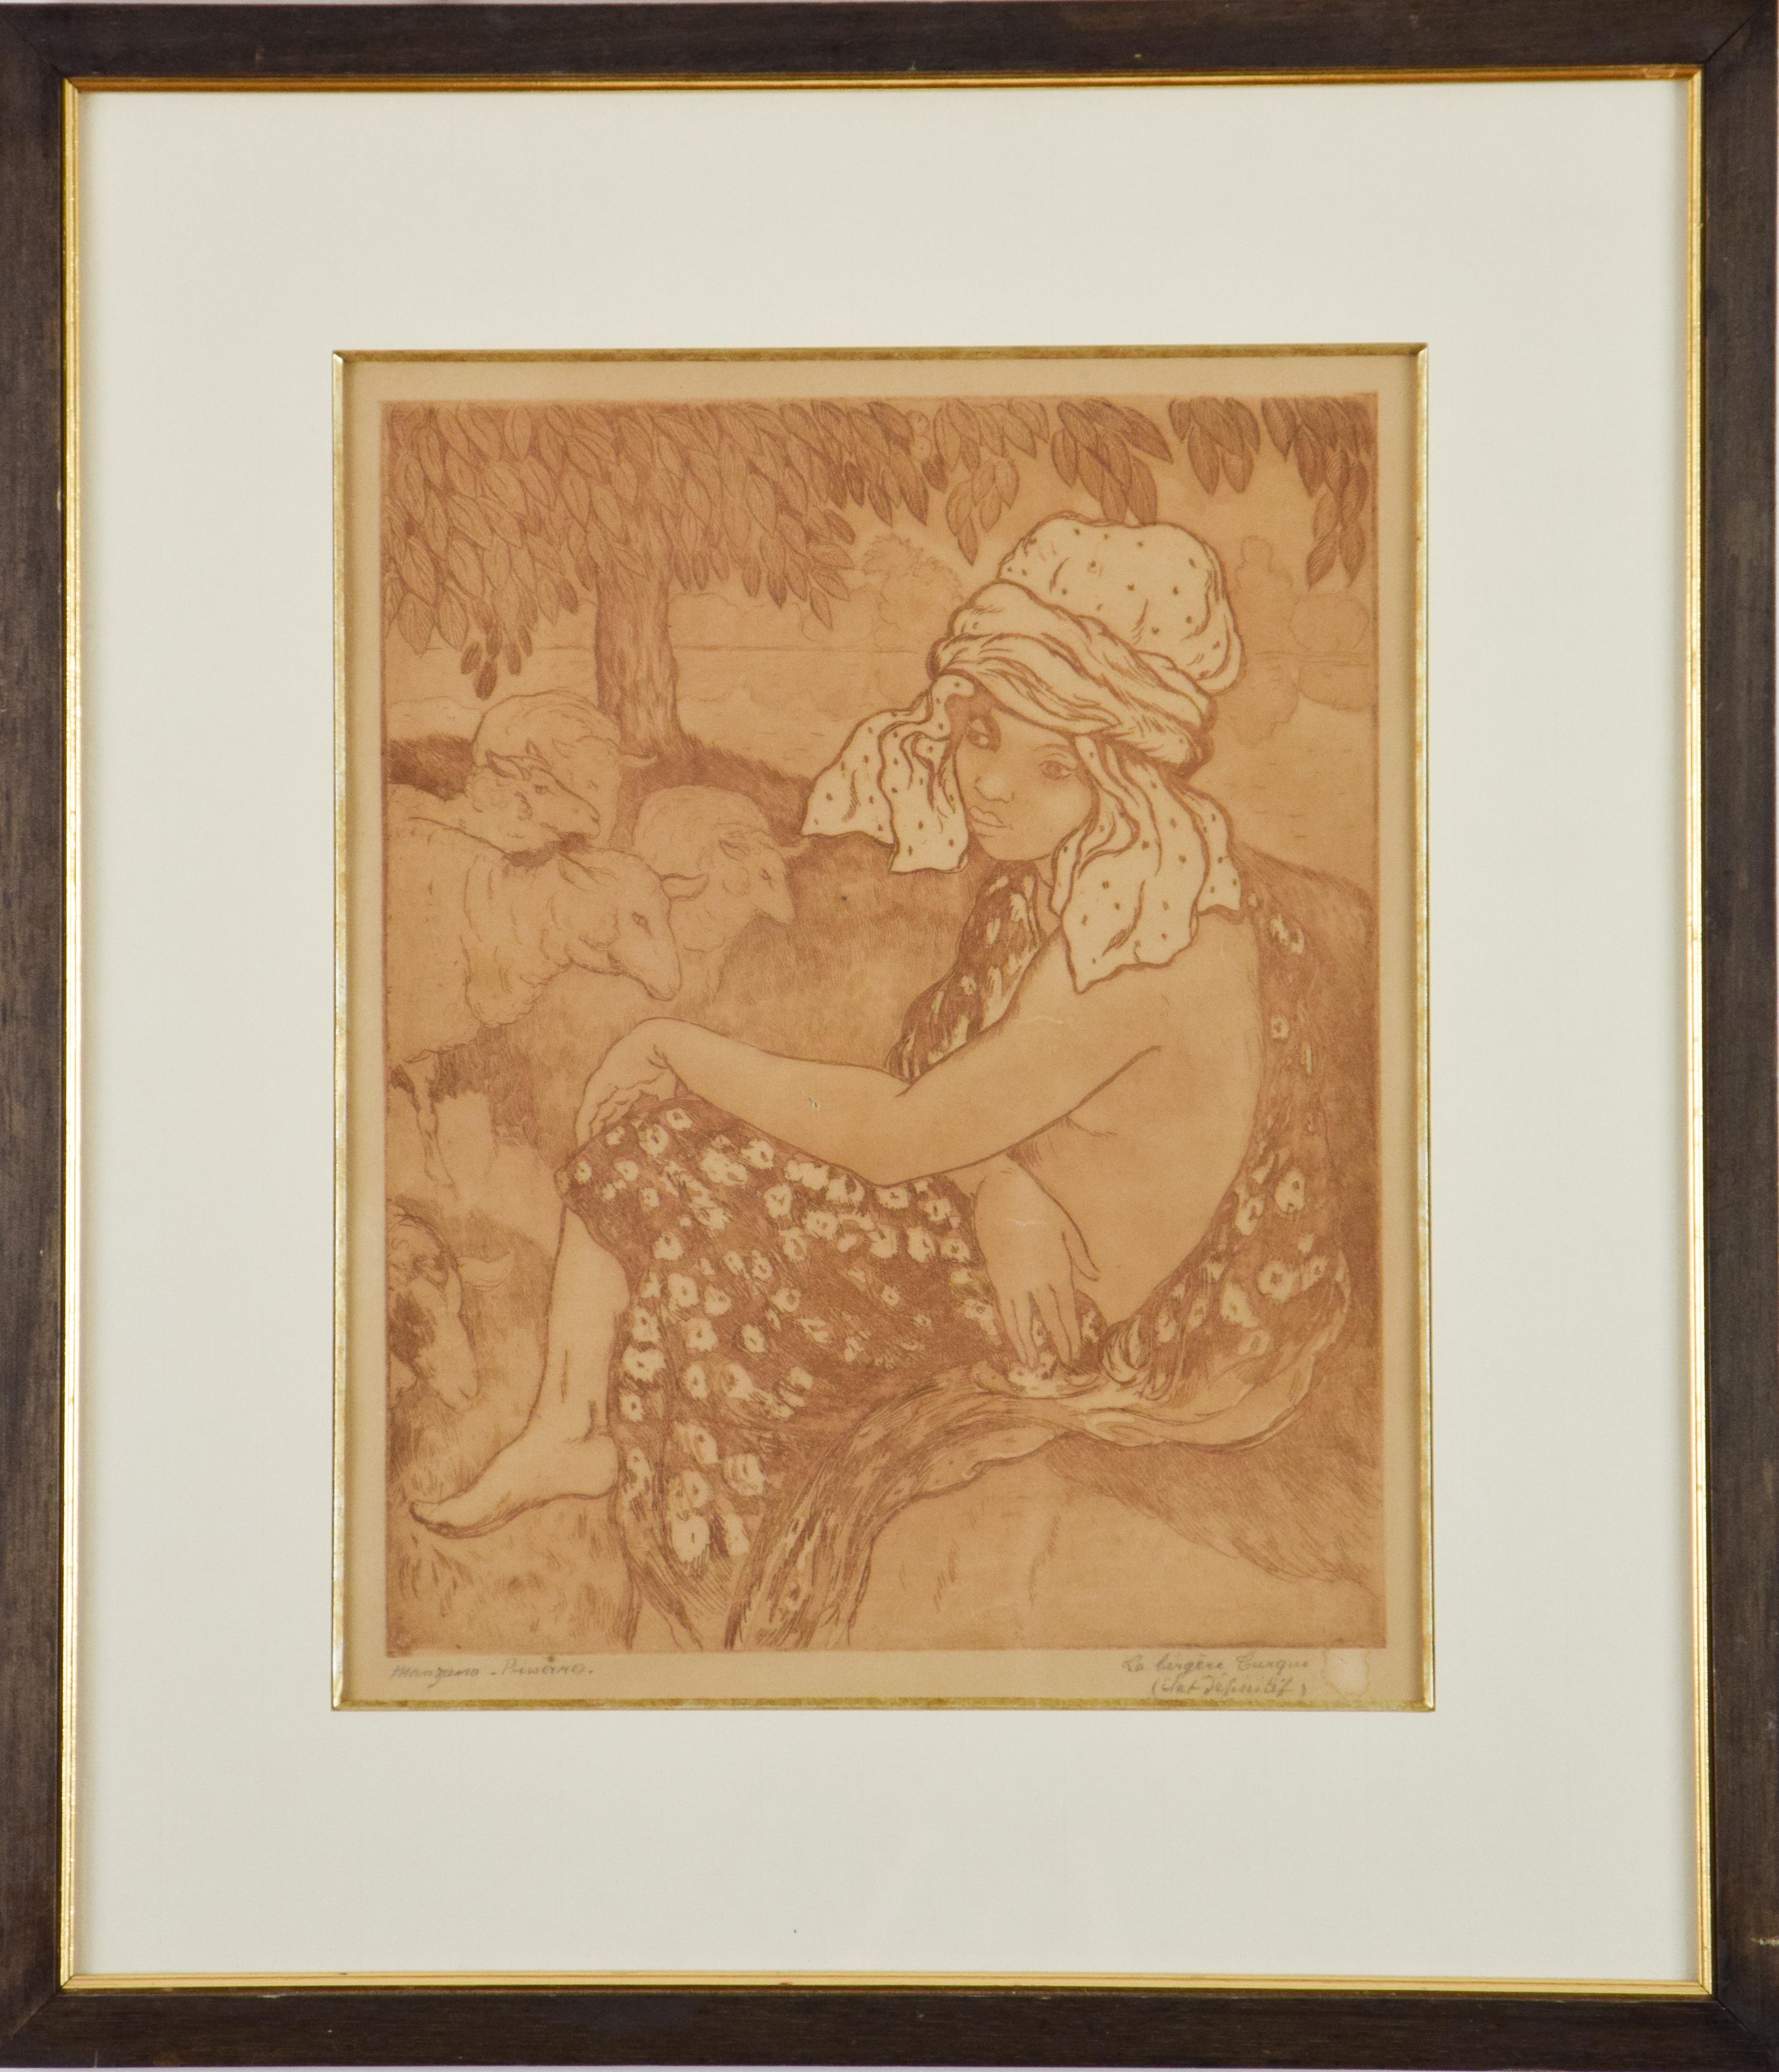 Druck von Georges Manzana Pissarro „La Bergre Turque“ (Die türkische Hirtenschwesterin) – Print von Georges Henri Manzana Pissarro